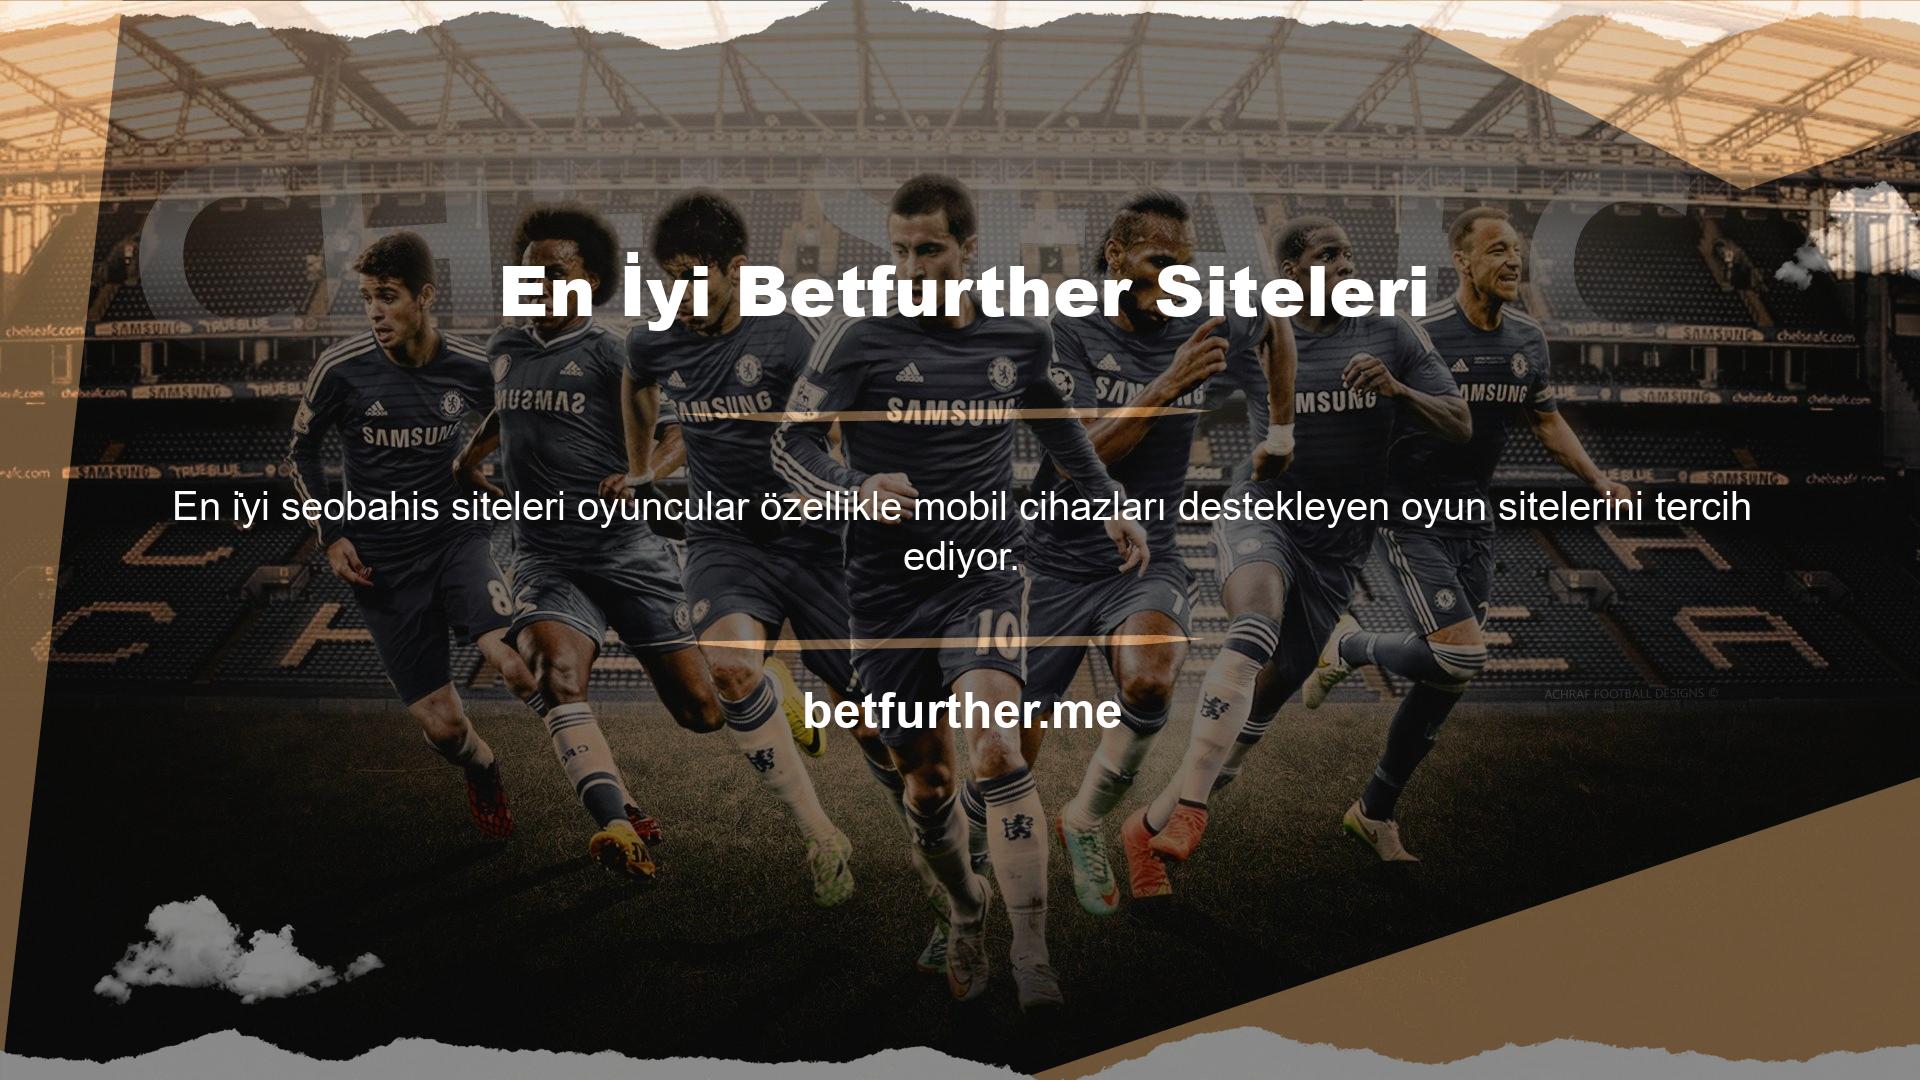 Bunun için Betfurther internet sitesi de gerekli desteği sağlamaktadır